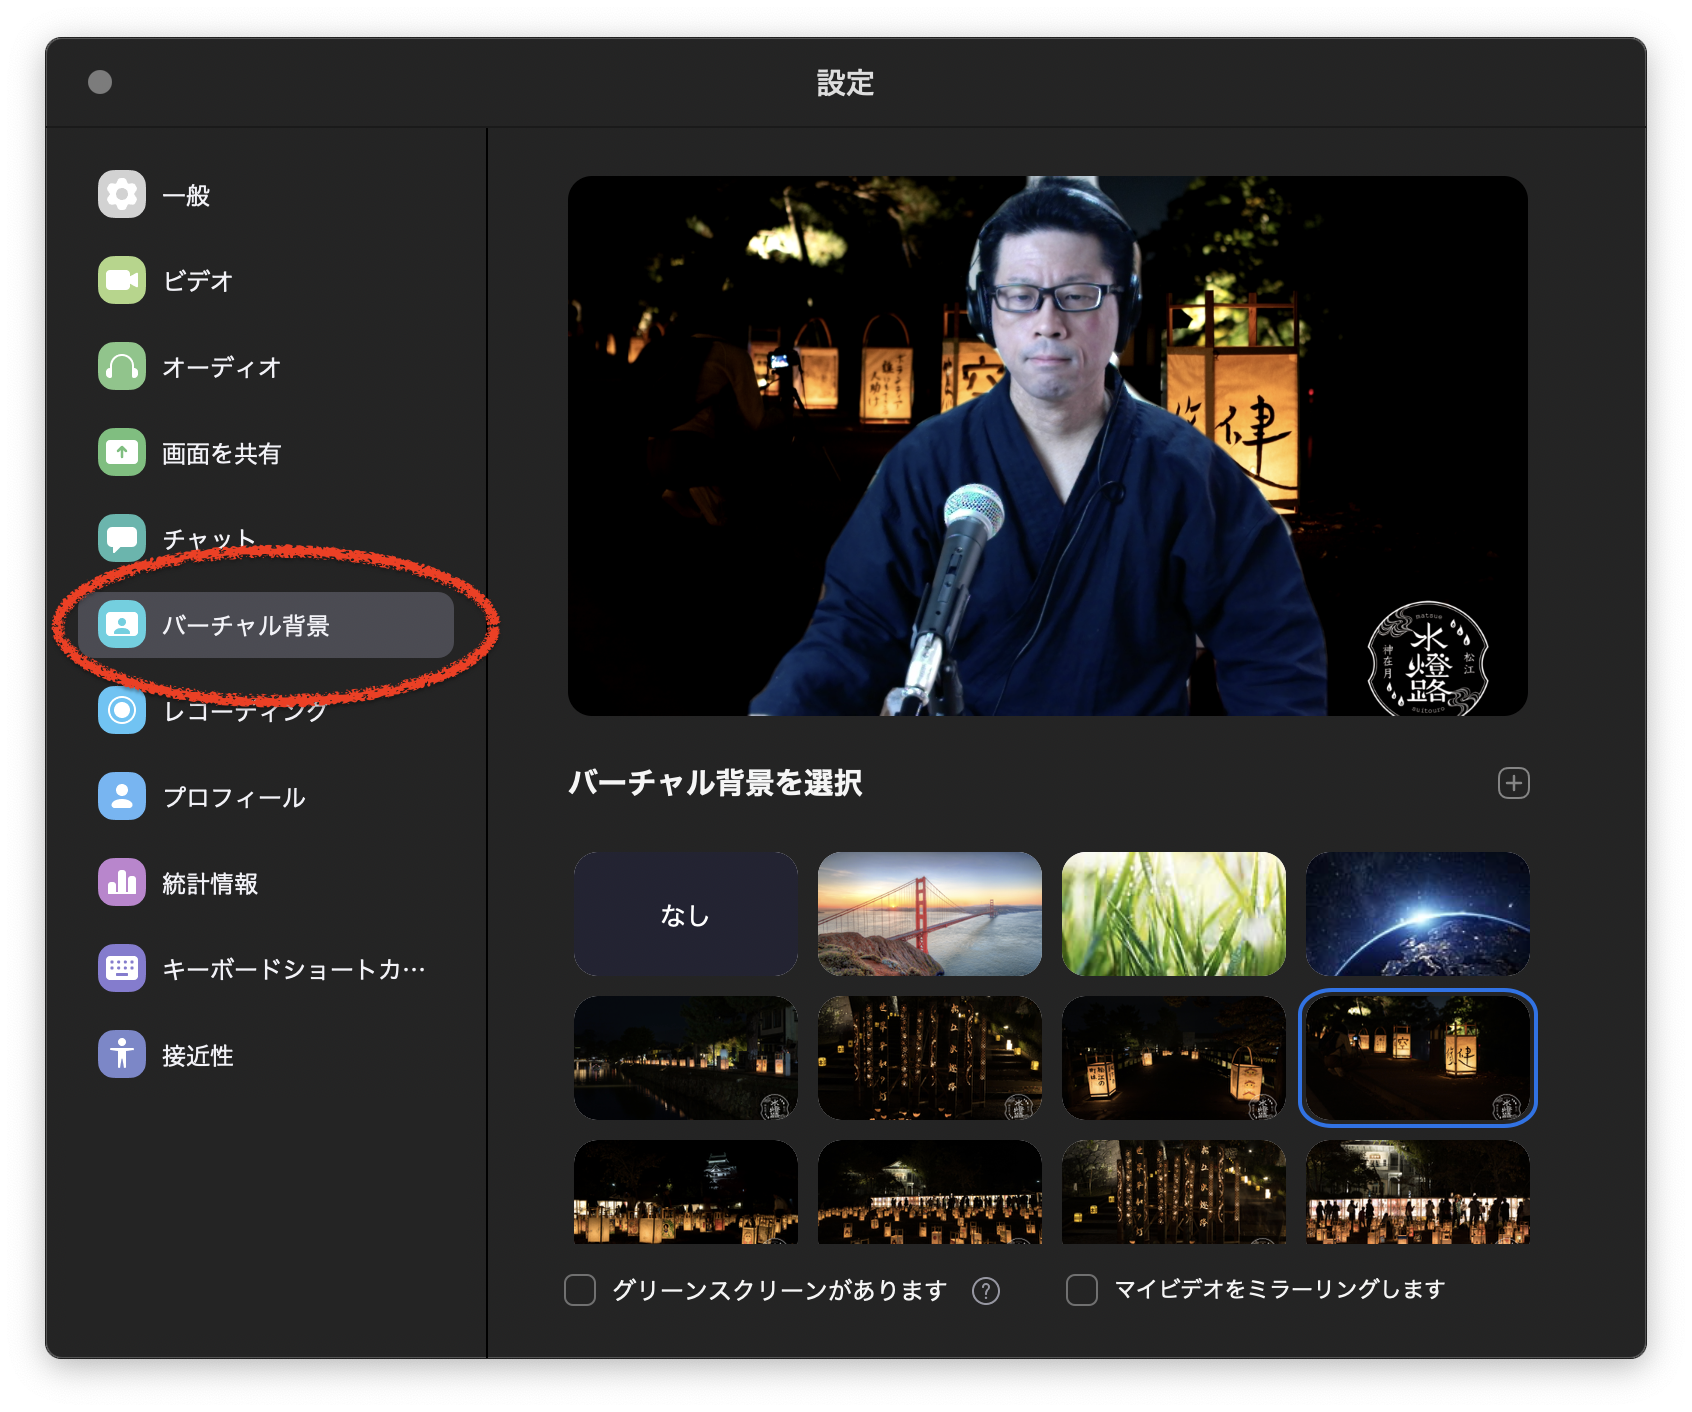 オンライン会議便利技 Zoomの背景画像 壁紙 を変える方法 Pc Iphone Jungo Gadget